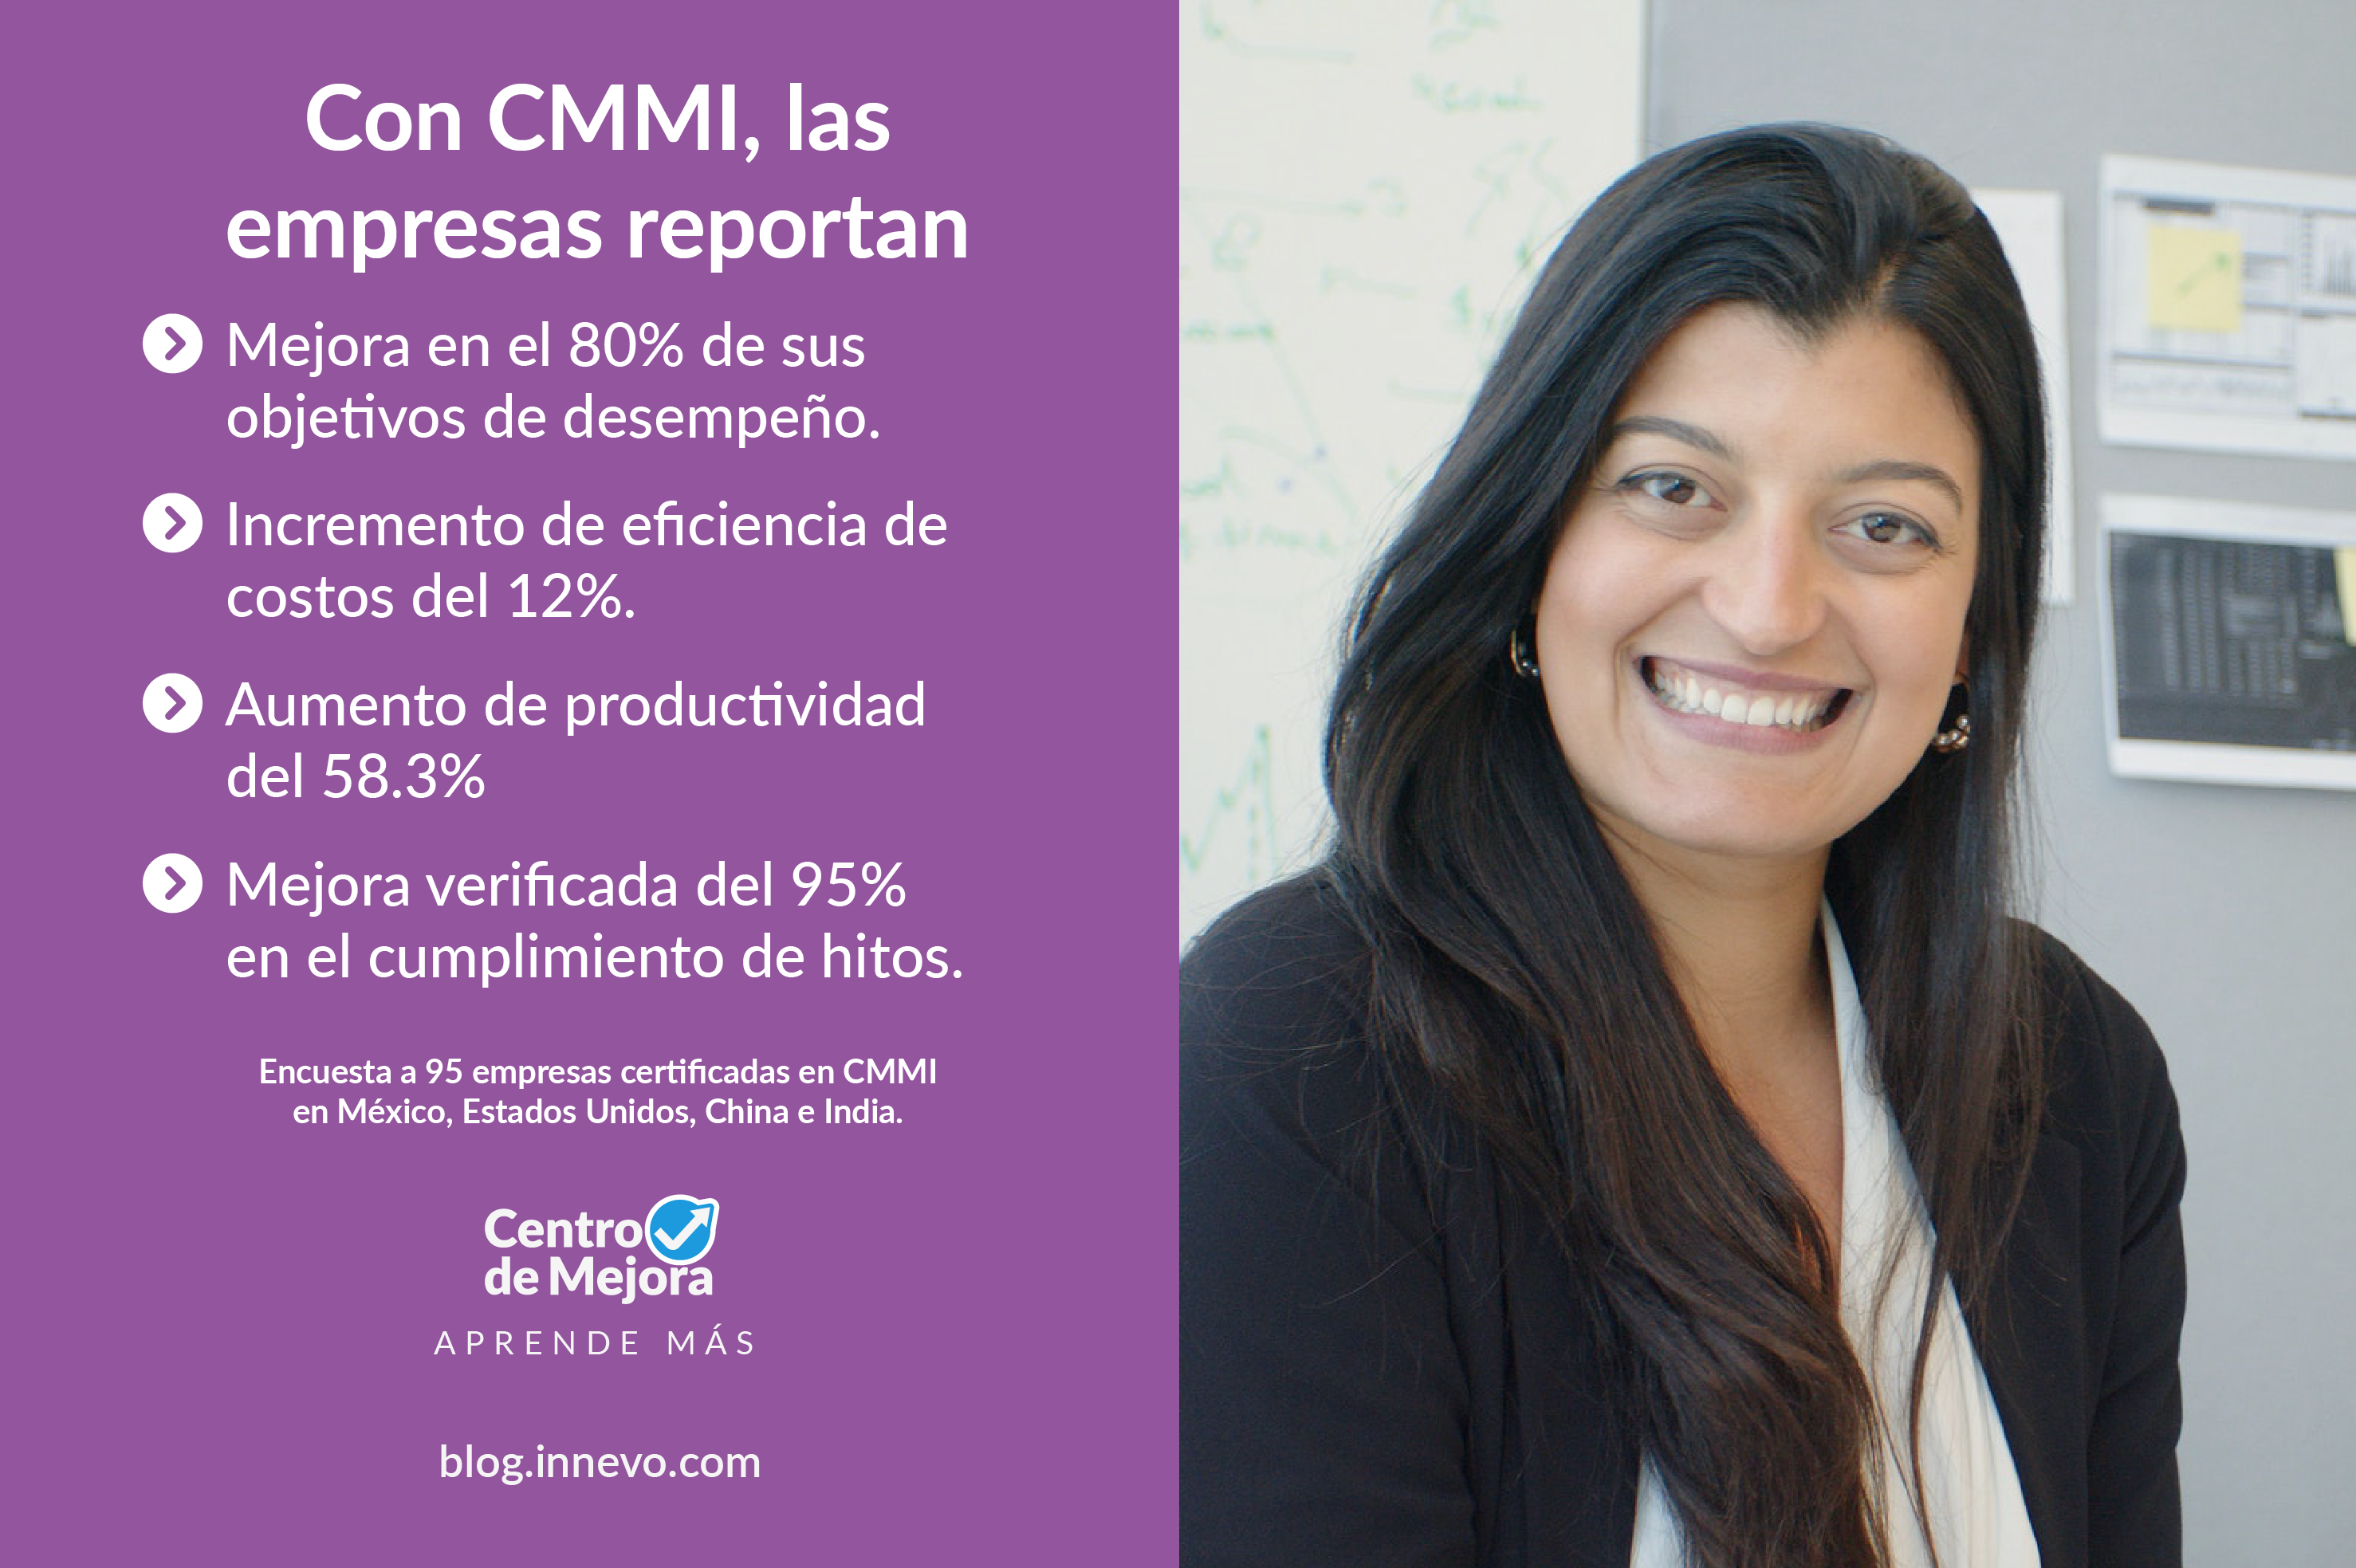 Con CMMI, las empresas reportan: Mejora en el 80% de sus objetivos de desempeño; Incremento de eficiencia de costos del 12%; Aumento de productividad del 58.3%; Mejora verificada del 95% en el cumplimiento de hitos. Encuesta a 95 empresas certificadas en CMMI en México, Estados Unidos, China e India. Centro de Mejora, el blog de Innevo.